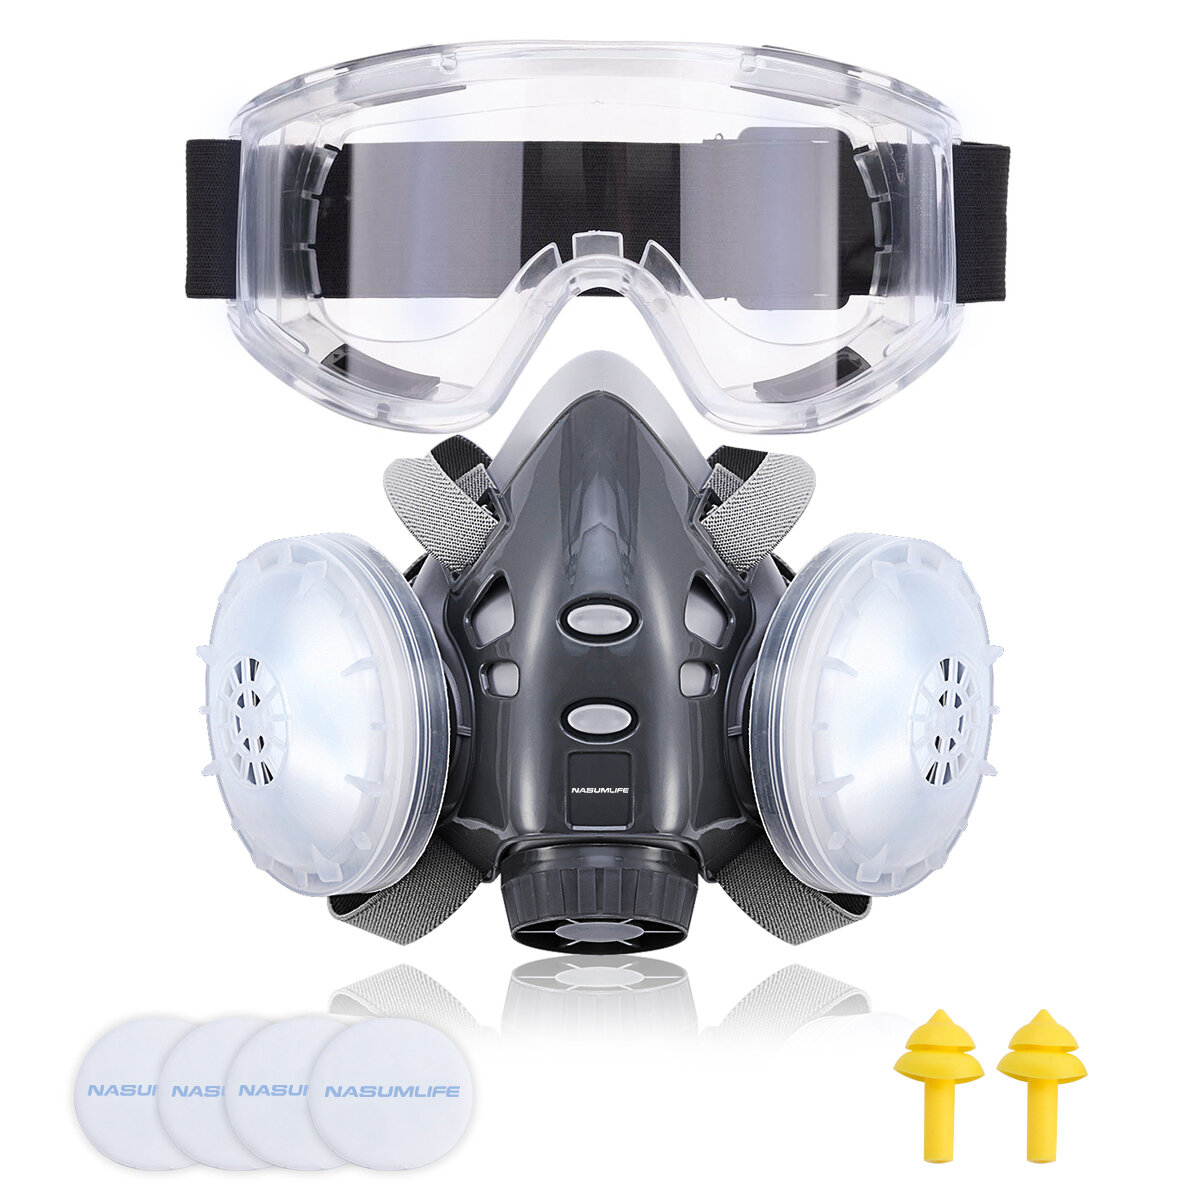 NASUM 308 Ademhalingsmasker Gezichtsmasker Herbruikbare Bril Goggle met Oordoppen Filters voor Stofb